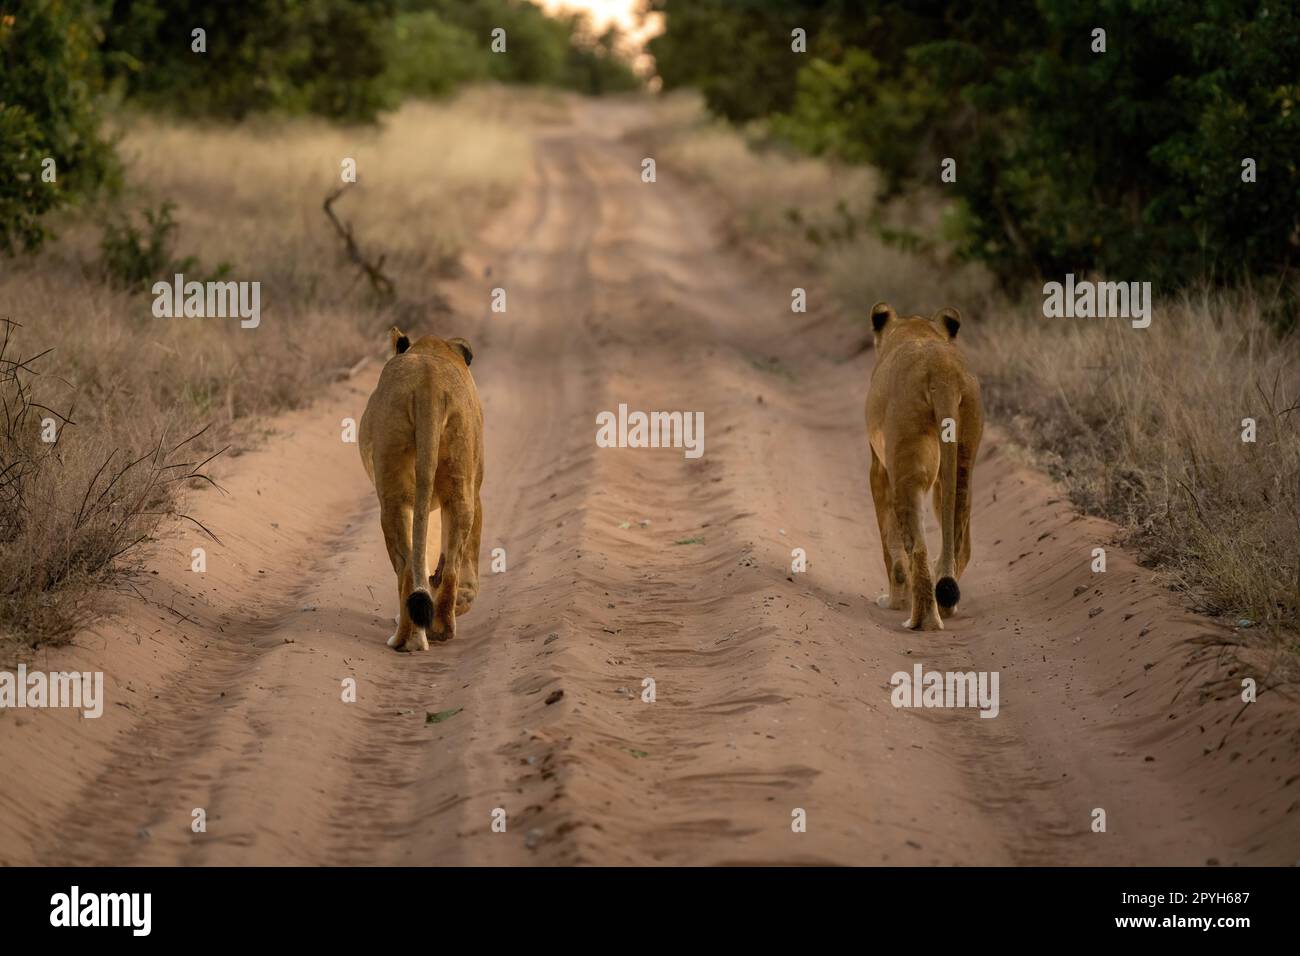 Löweninnen gehen auf der Strecke von der Kamera weg Stockfoto